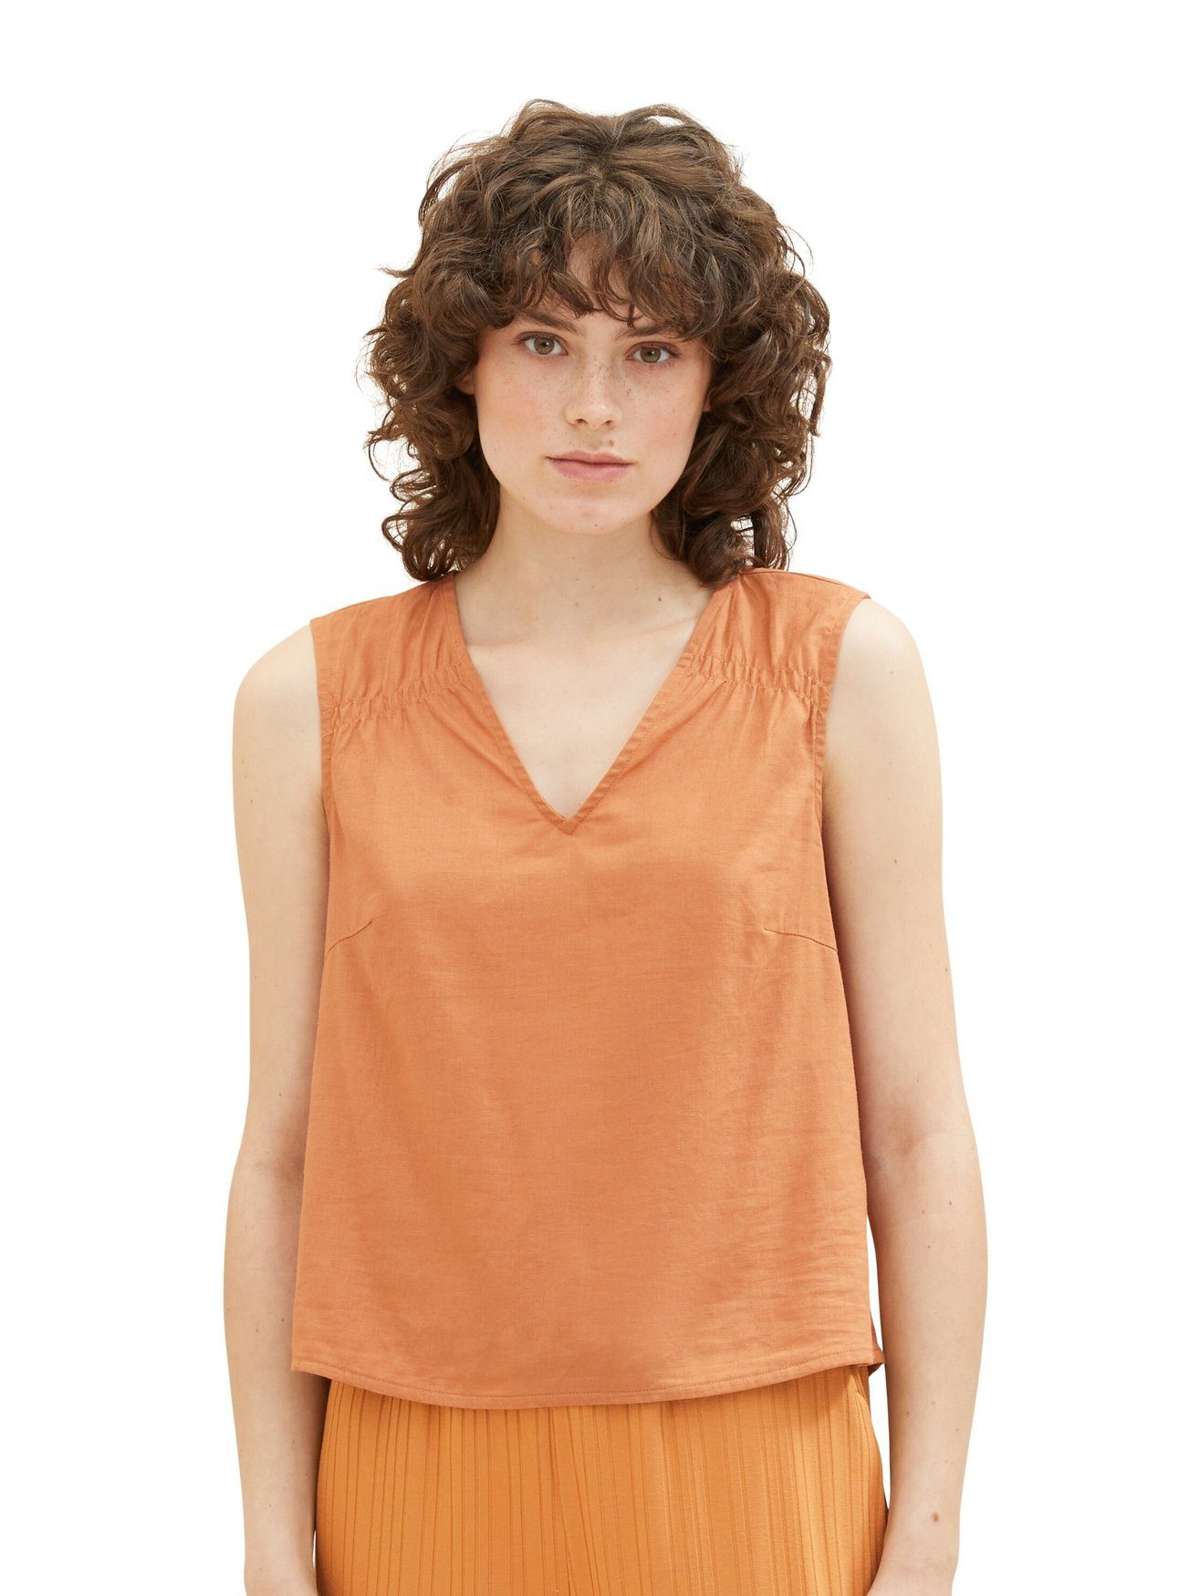 Топ-рубашка Блузка без рукавов Топ с V-образным вырезом из льна BLUSENT TOP 5642 бирюзового цвета